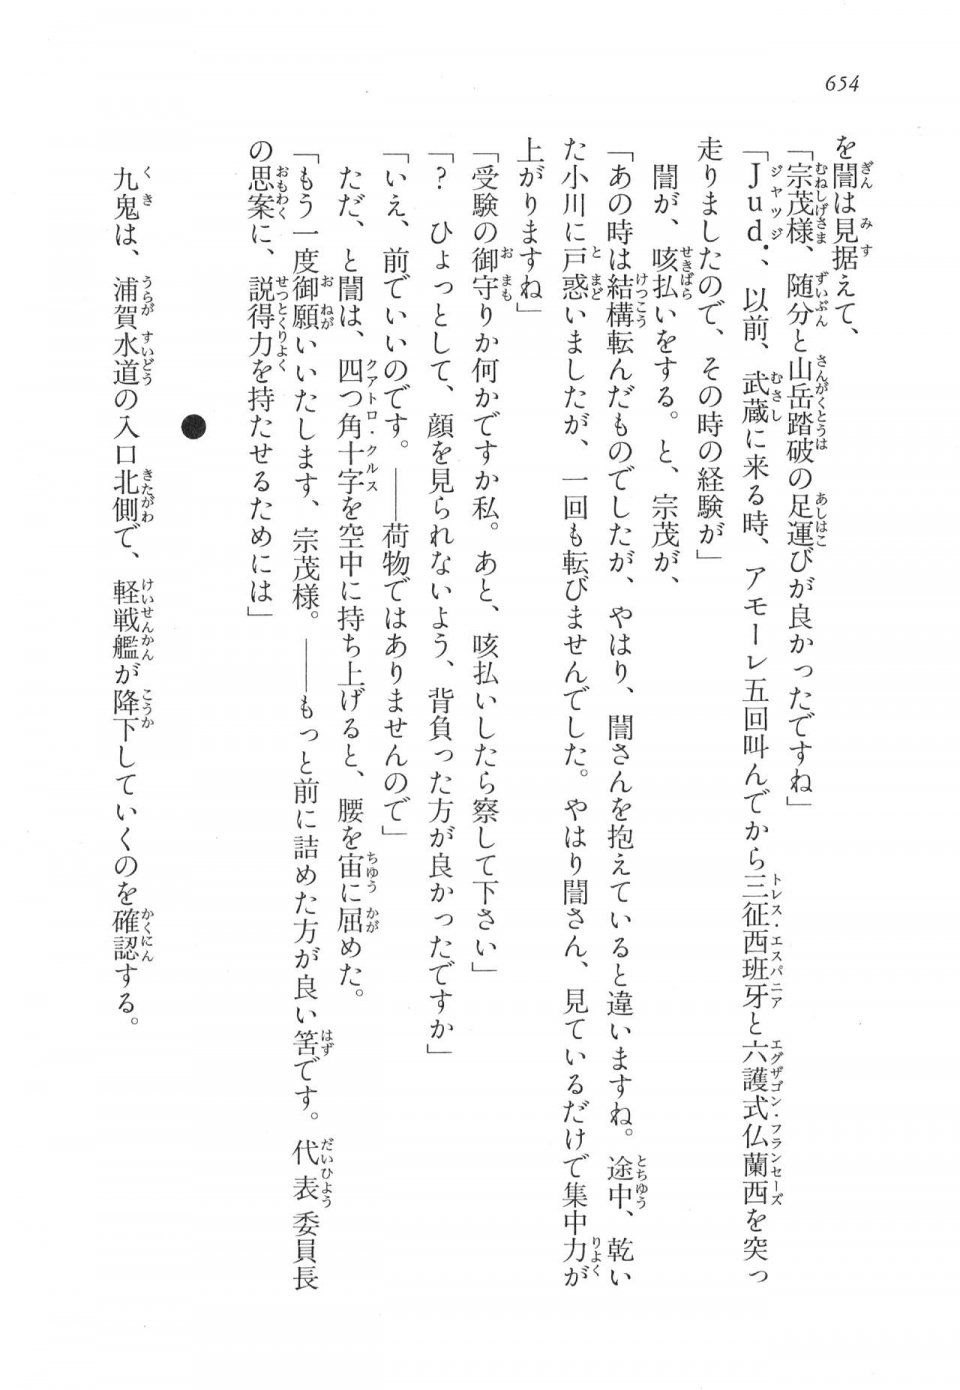 Kyoukai Senjou no Horizon LN Vol 17(7B) - Photo #656